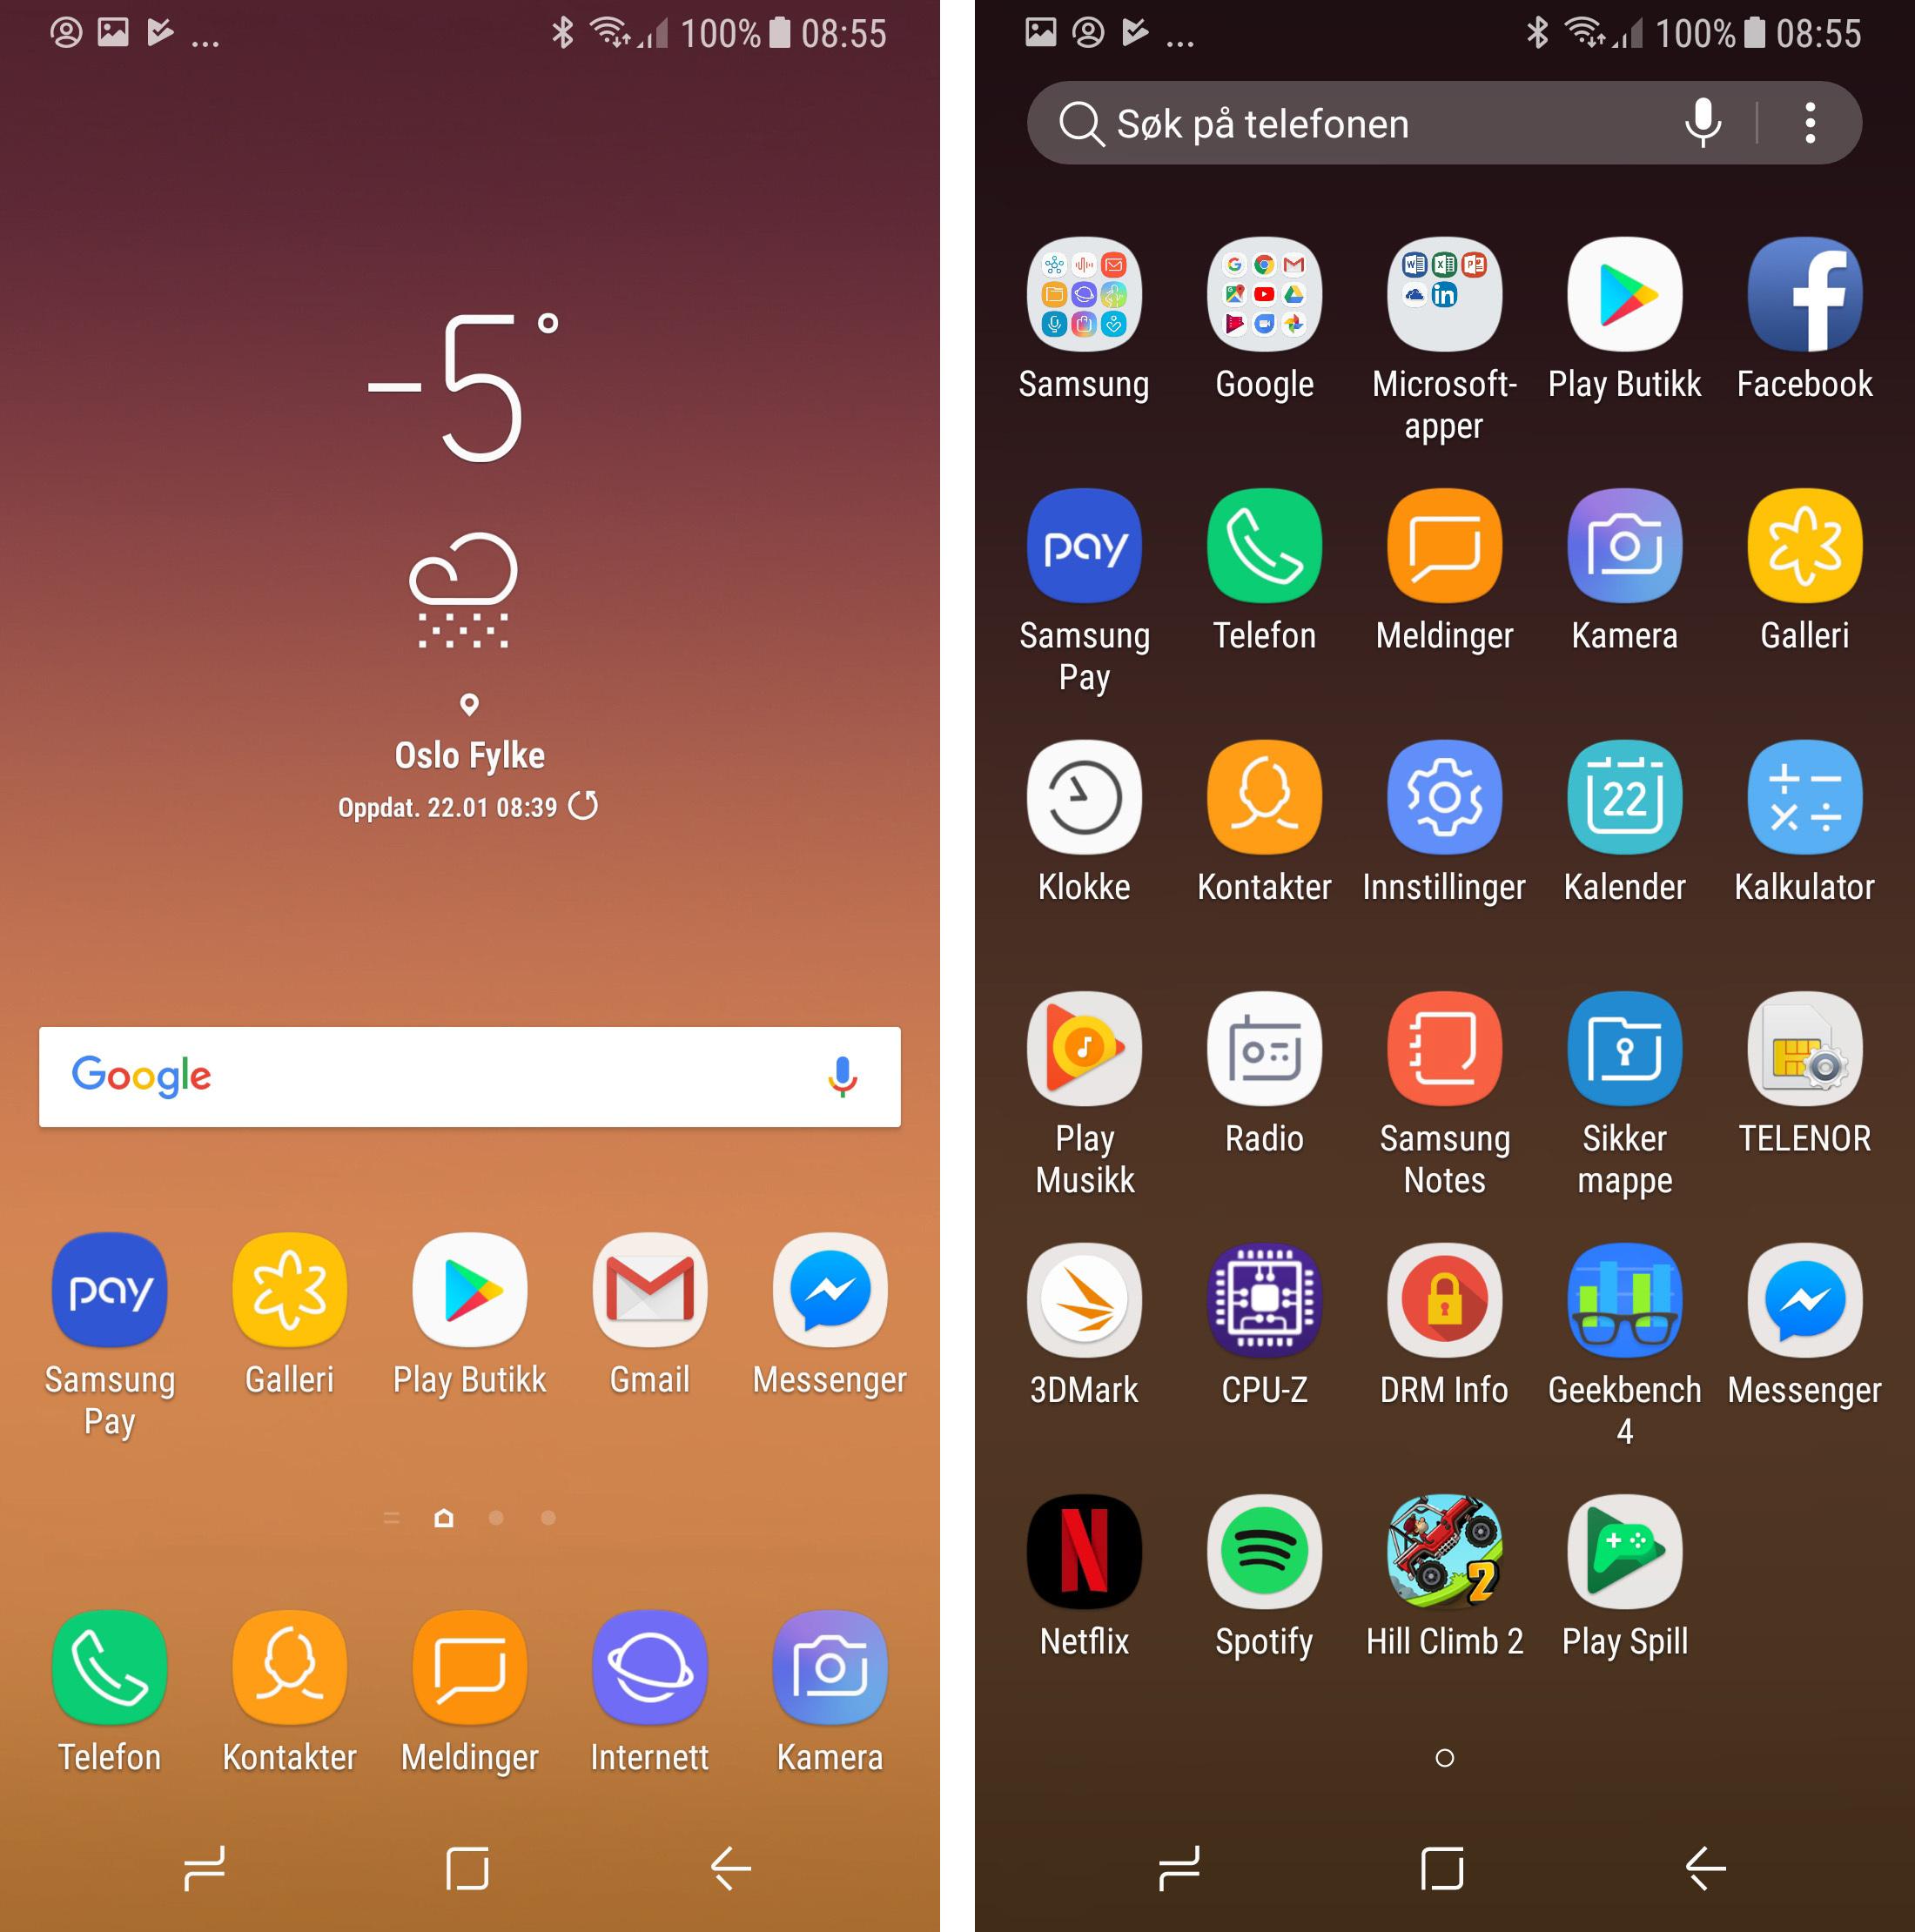 Menyene her er omtrent slik vi kjenner dem fra Samsungs andre nye Android-telefoner. Menyopplevelsen er kjapp, og du veksler mellom appskuff og hjemmeskjerm ved å sveipe opp og ned på skjermen.